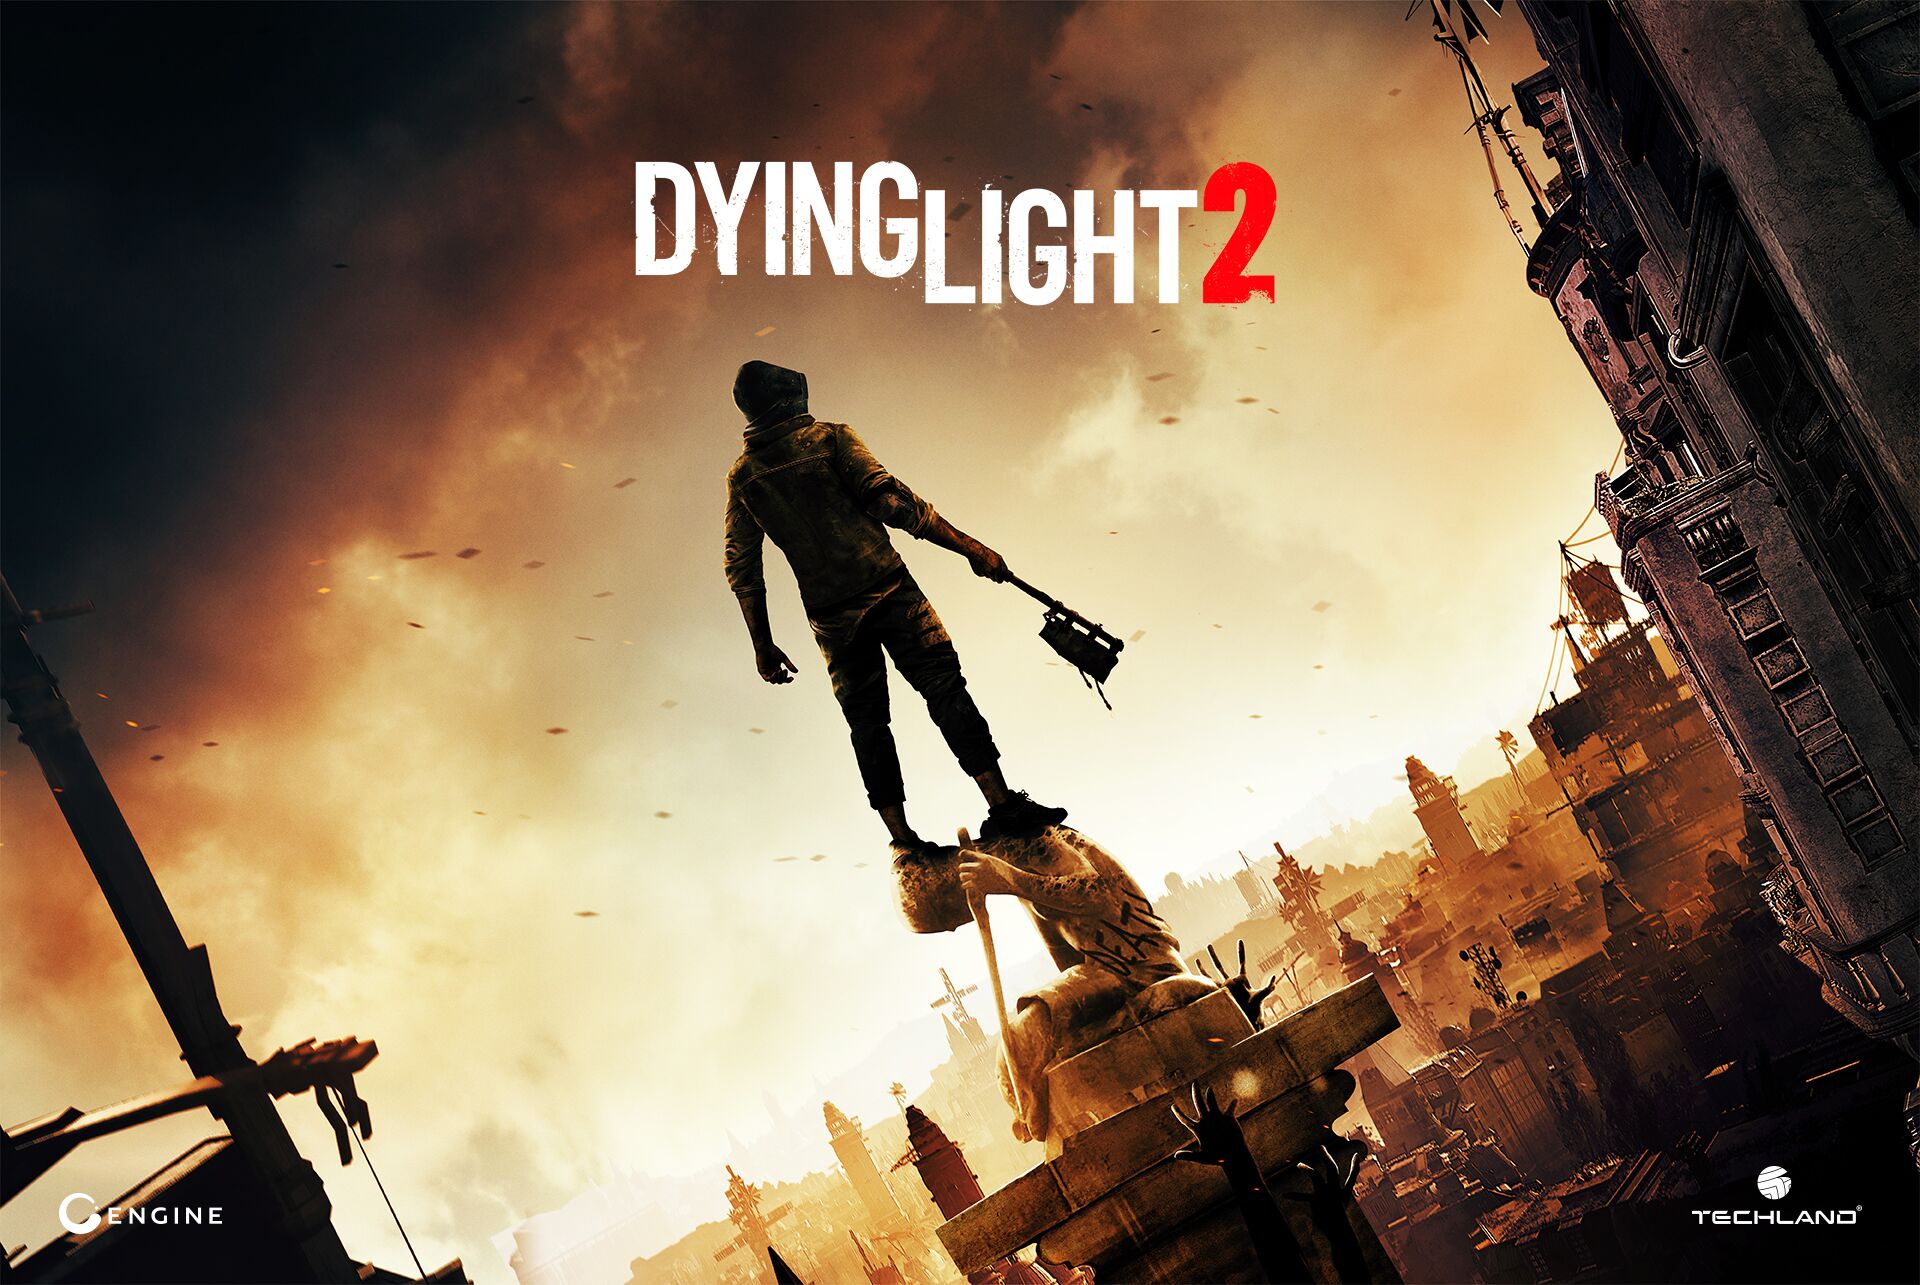 Los guionistas de The Witcher 3 participan en el desarrollo de Dying Light 2